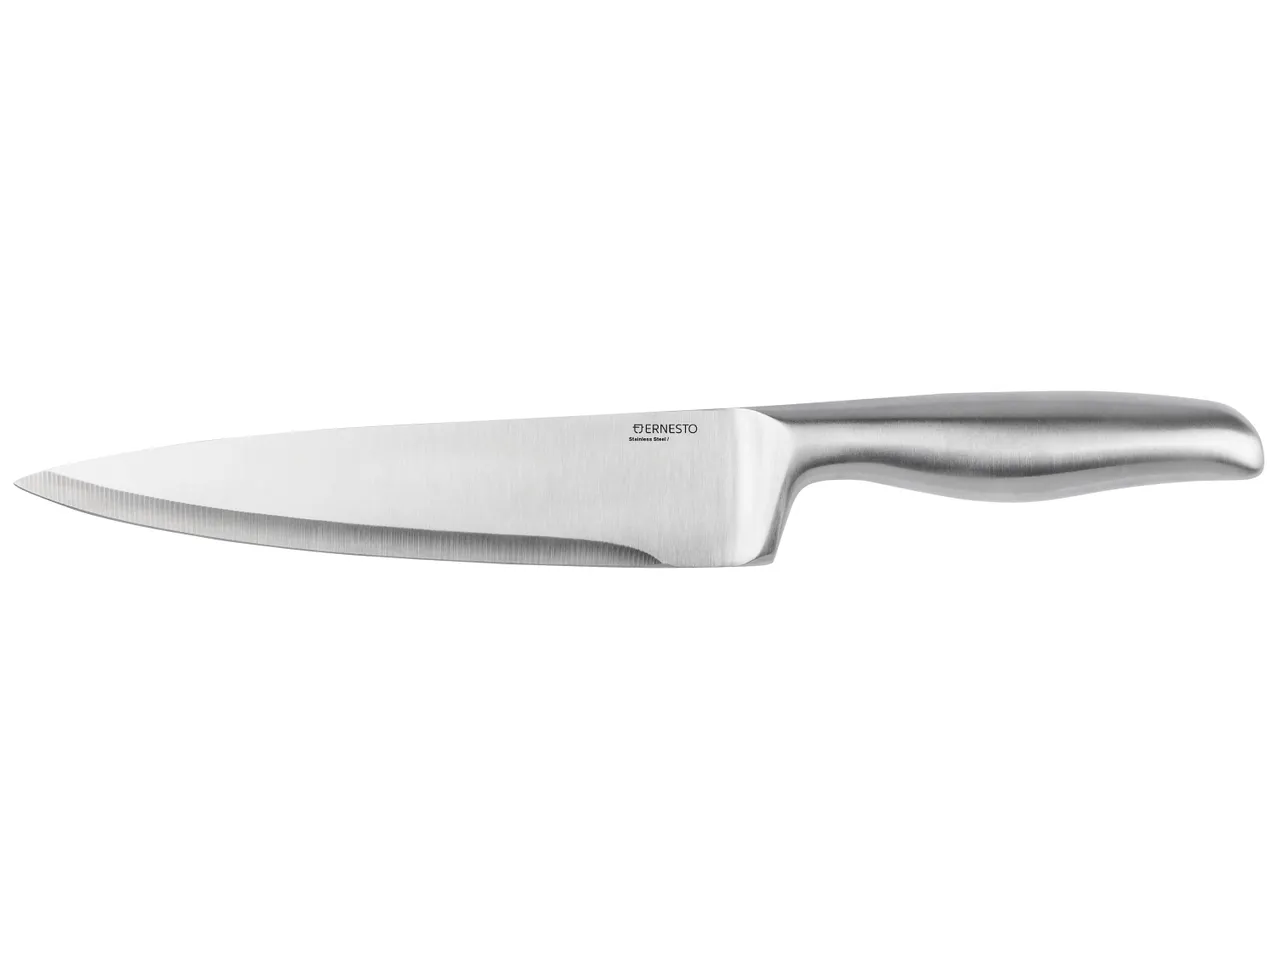 Couteau de cuisine , prezzo 4.99 EUR 
Couteau de cuisine 
Au choix :
- COUTEAUX ...